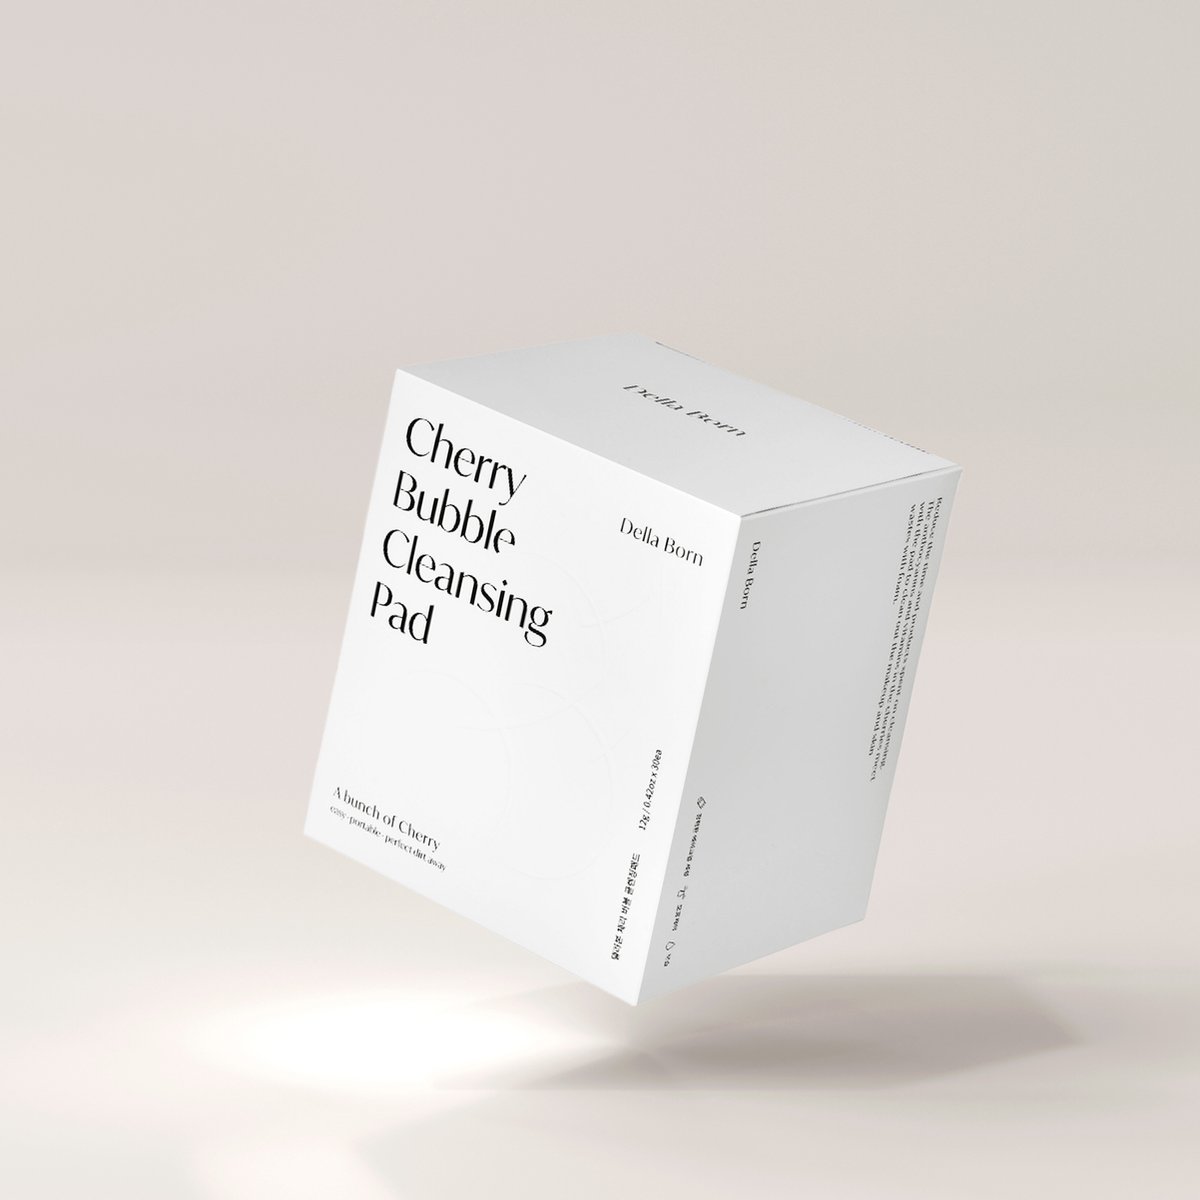 DELLA BORN - Cherry Bubble Cleansing pad - 1 box - [Korean Skincare]